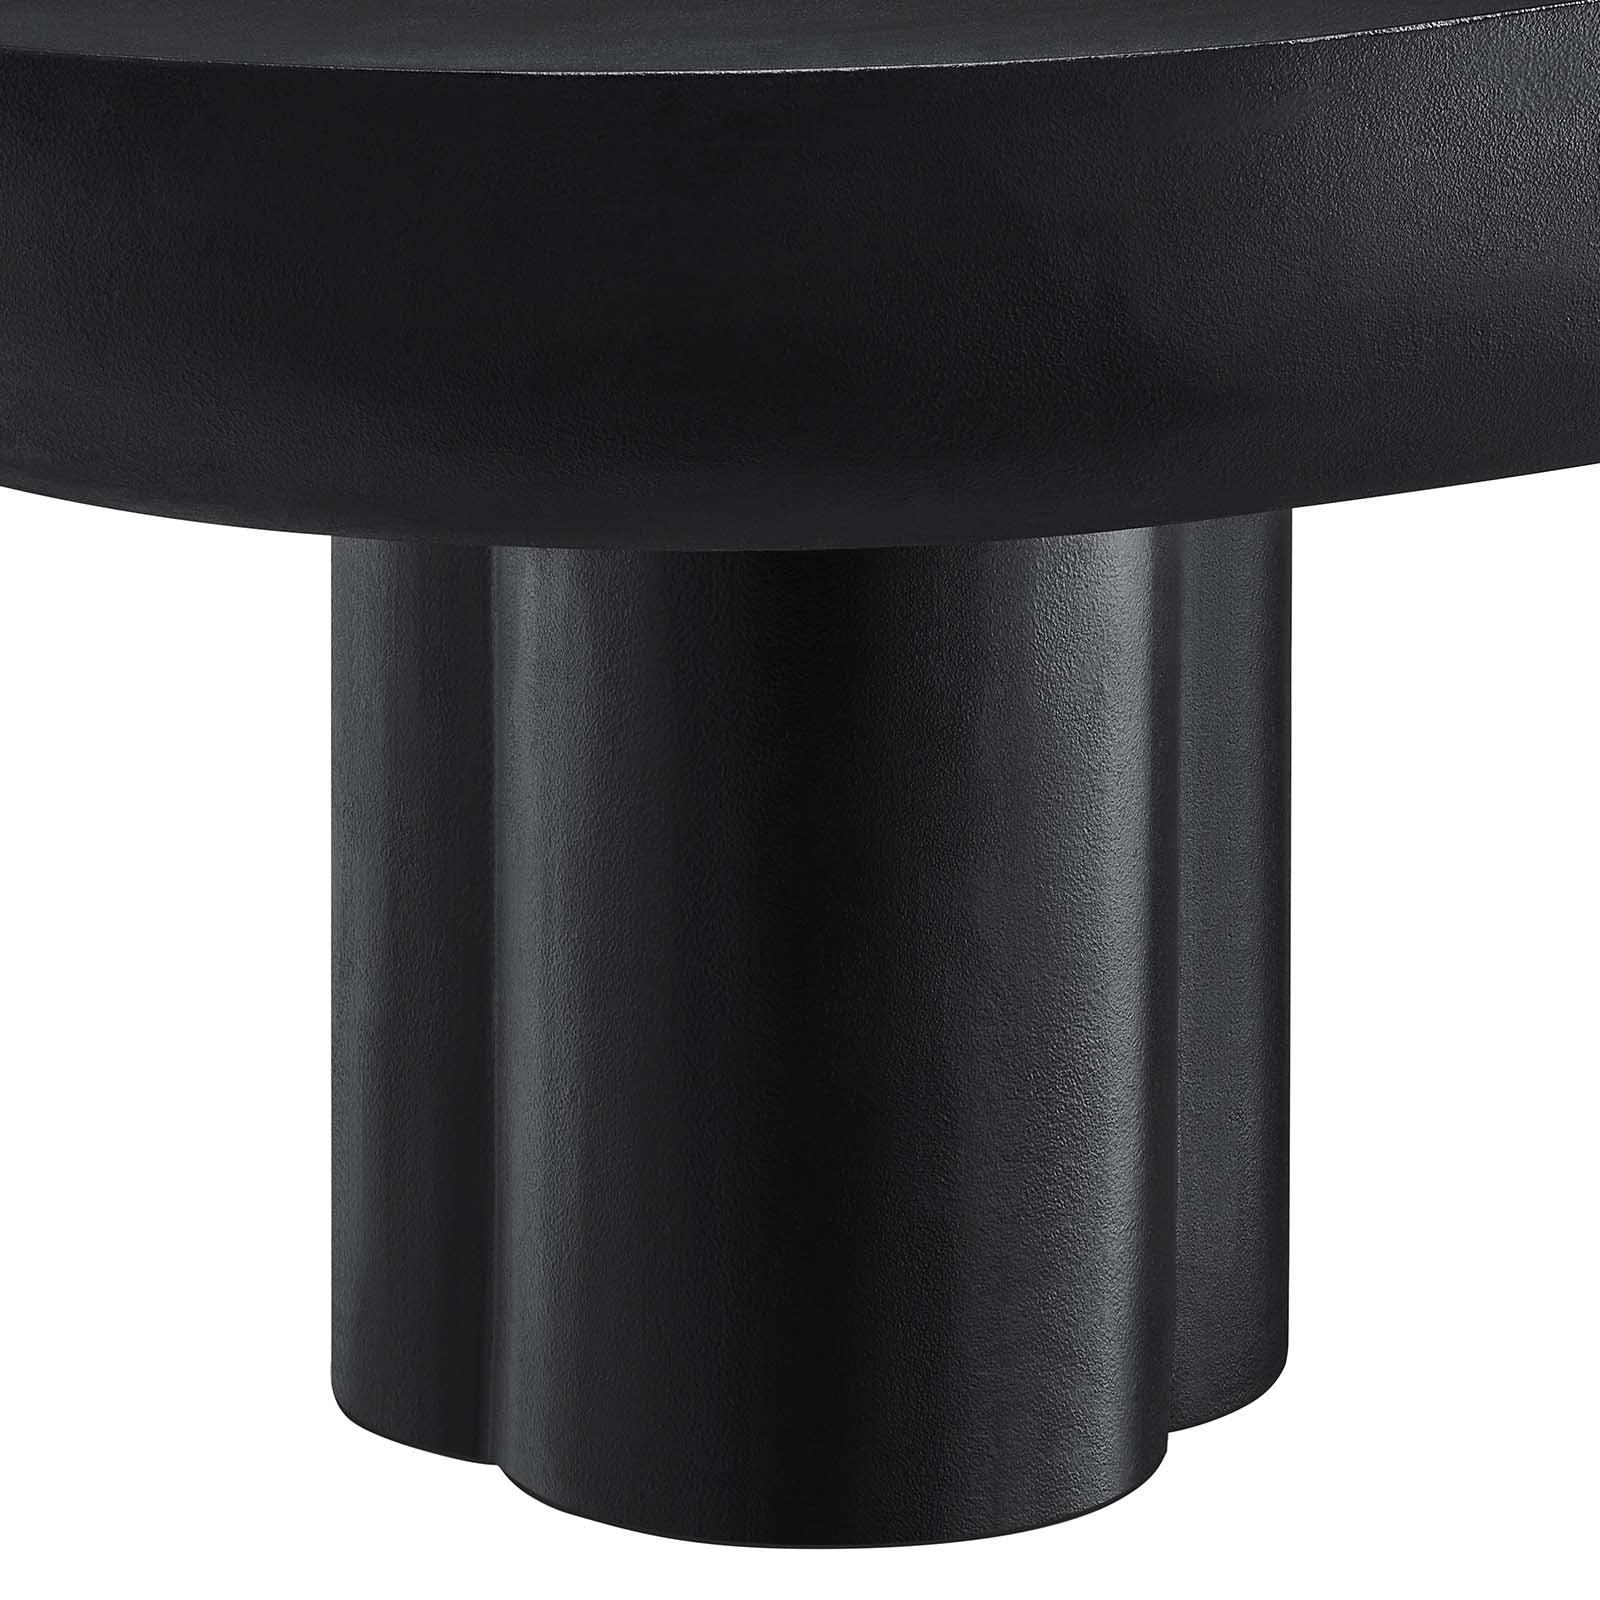 CASPER OVAL CONCRETE COFFEE TABLE - BLACK